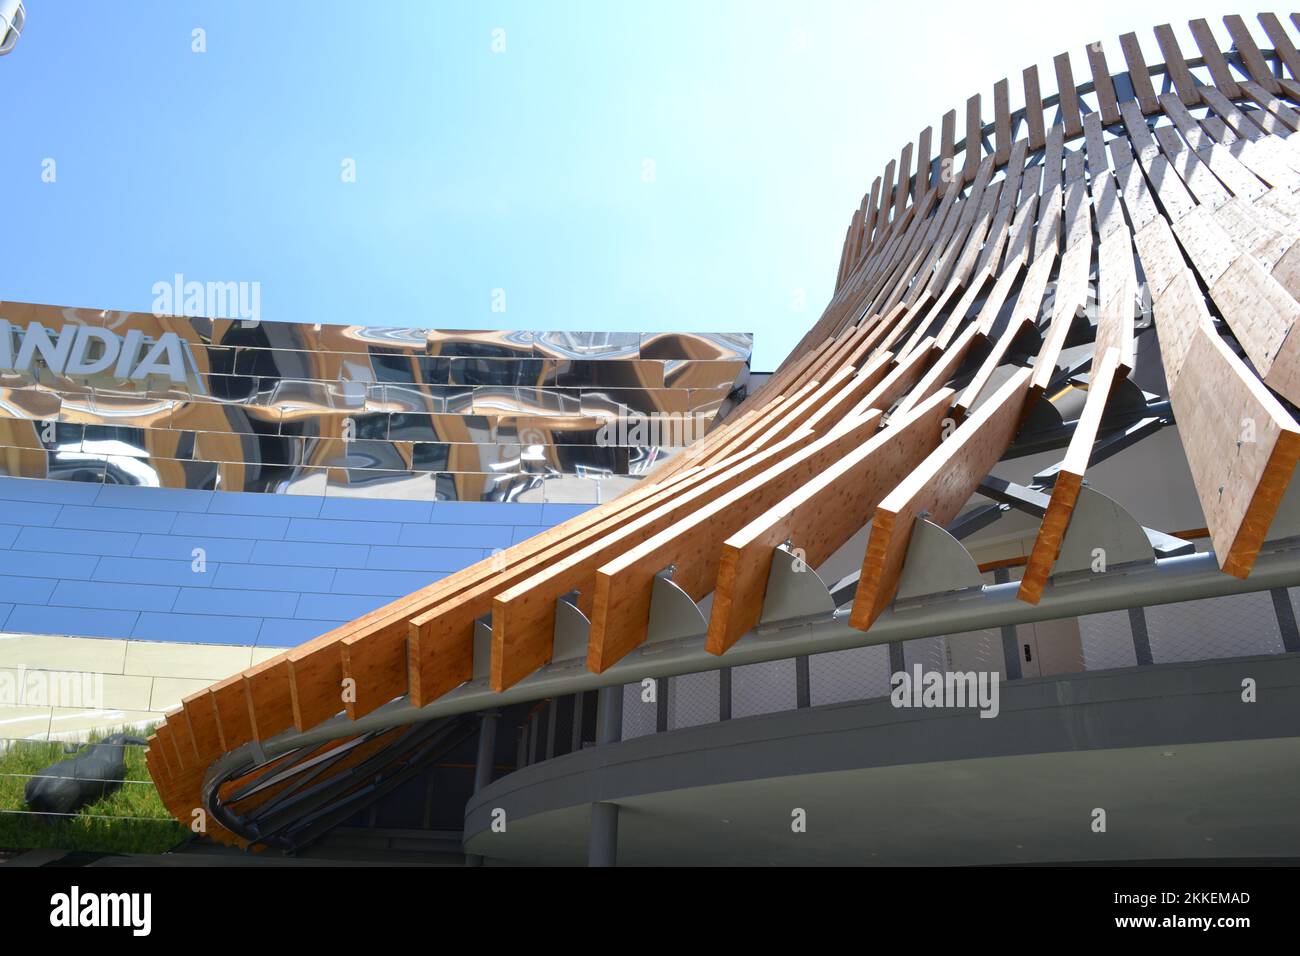 Das konische Dach besteht aus den großen Holzplanken des Thailand Pavillons der EXPO Milano 2015 unter direkter und heller Sonne. Detail der Architektur. Stockfoto